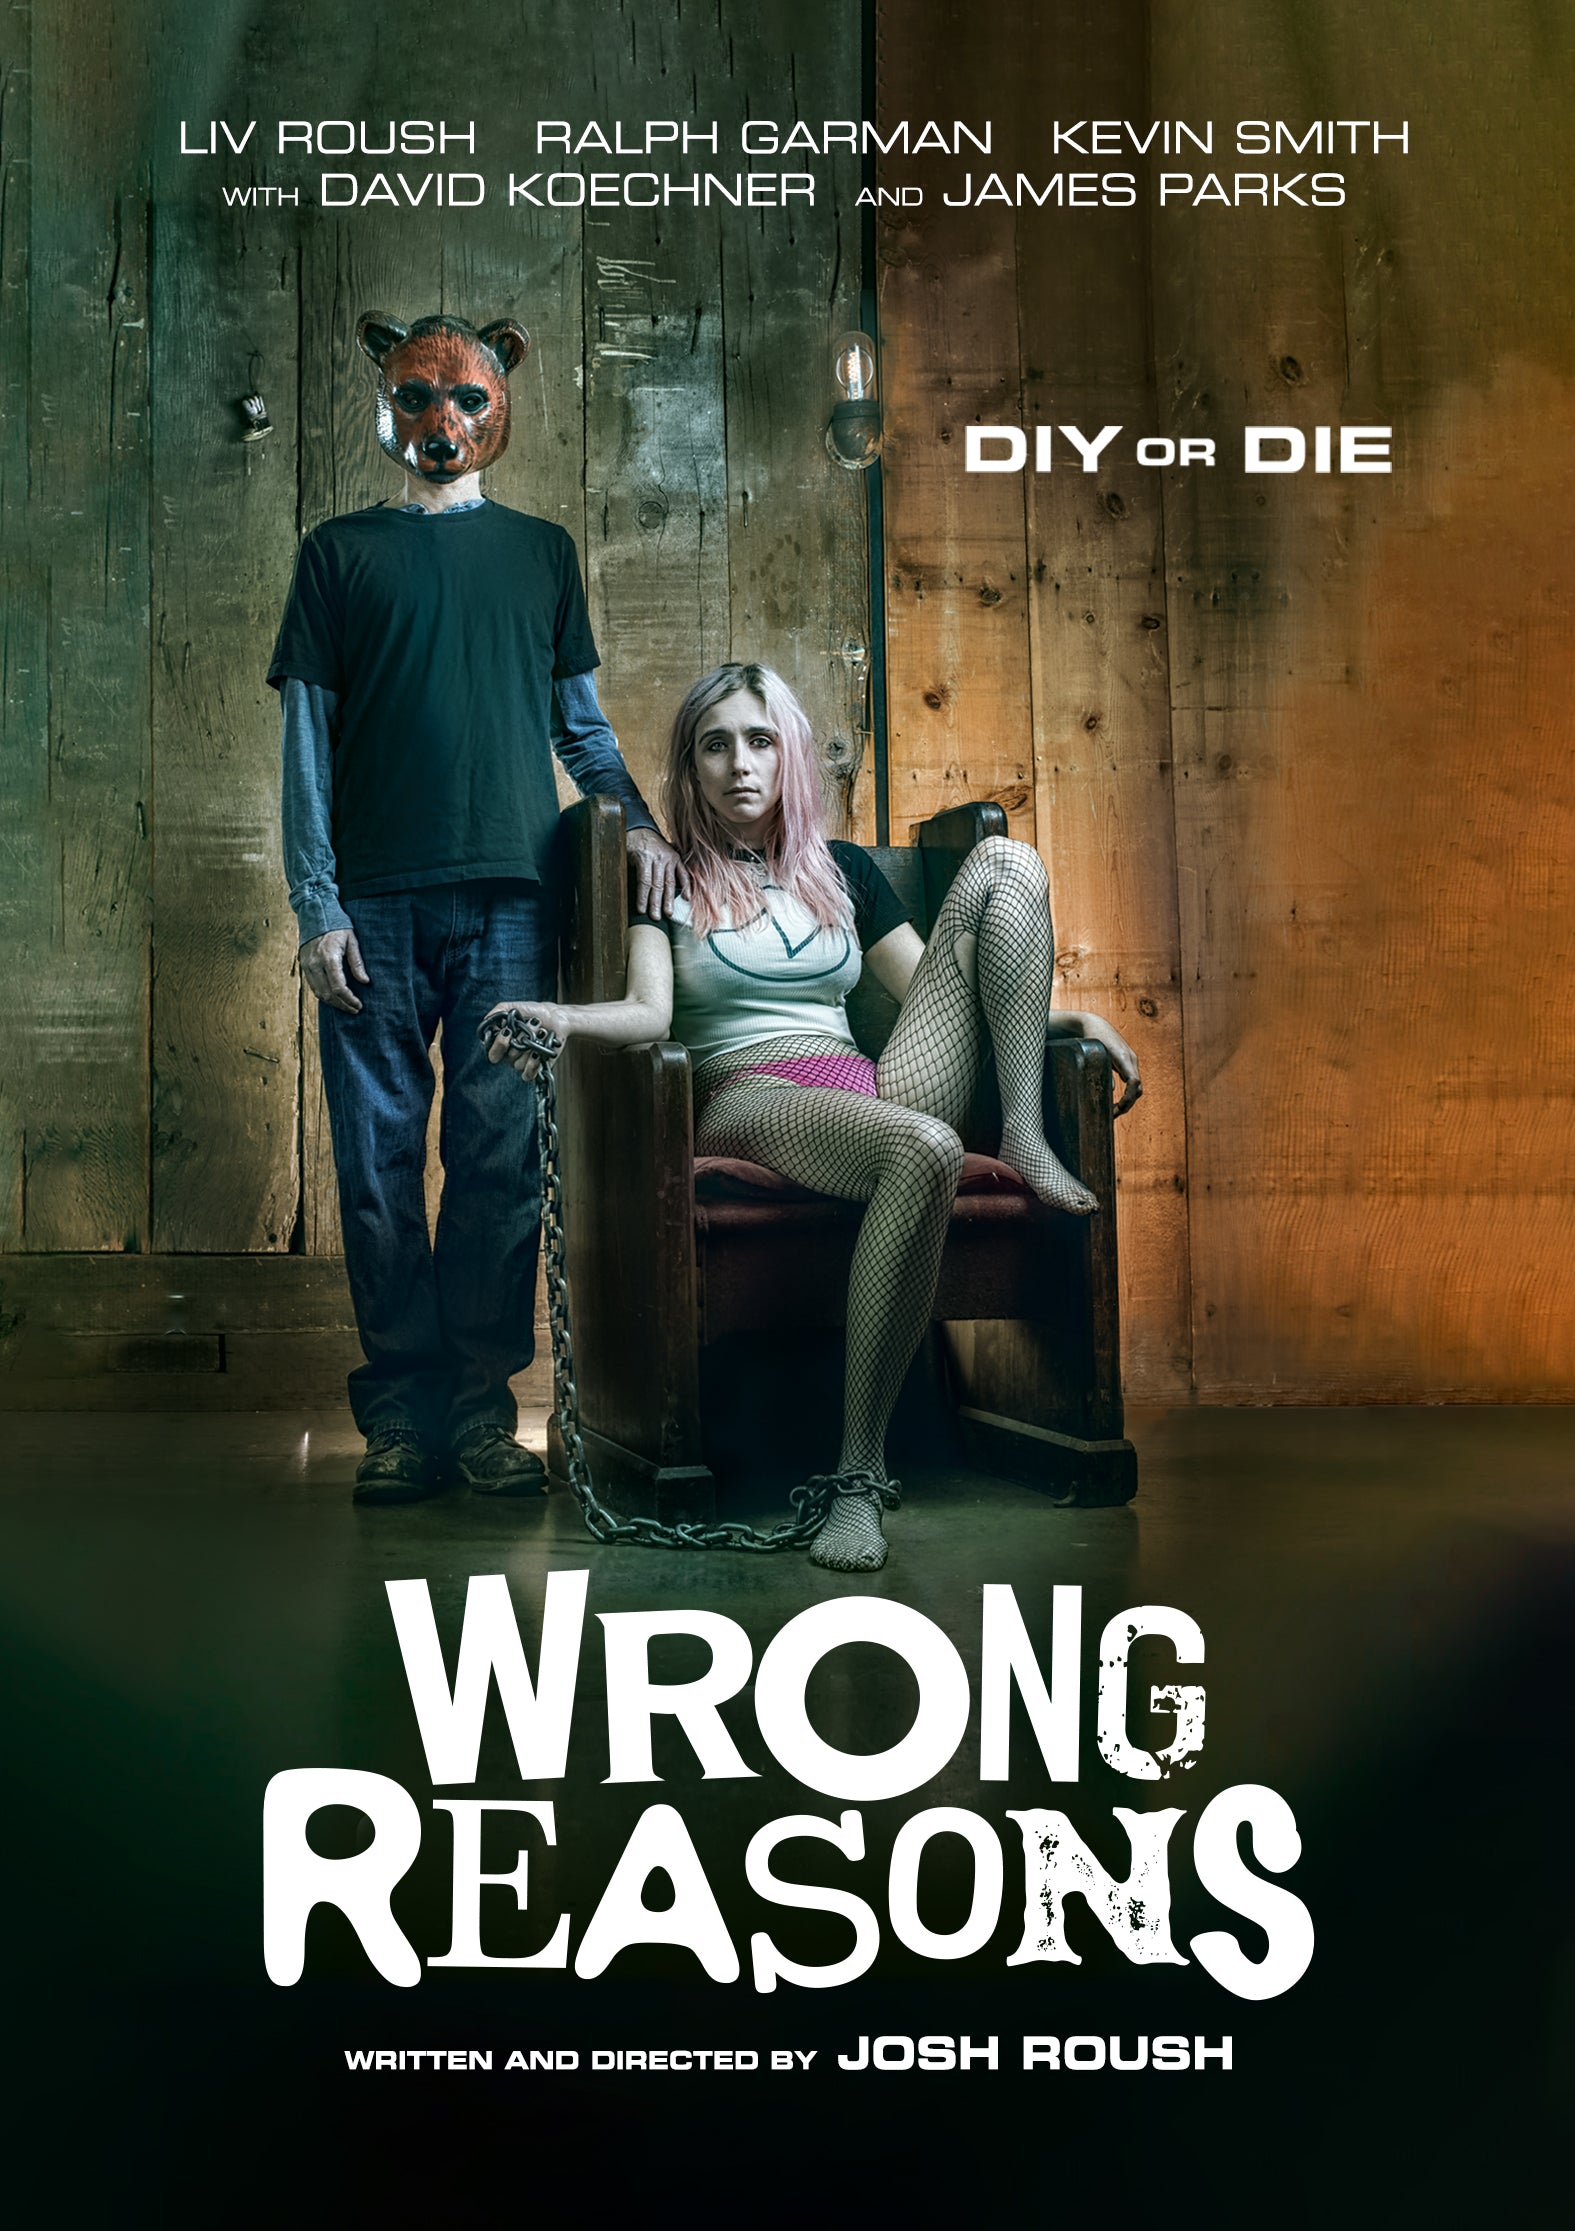 WRONG REASONS DVD